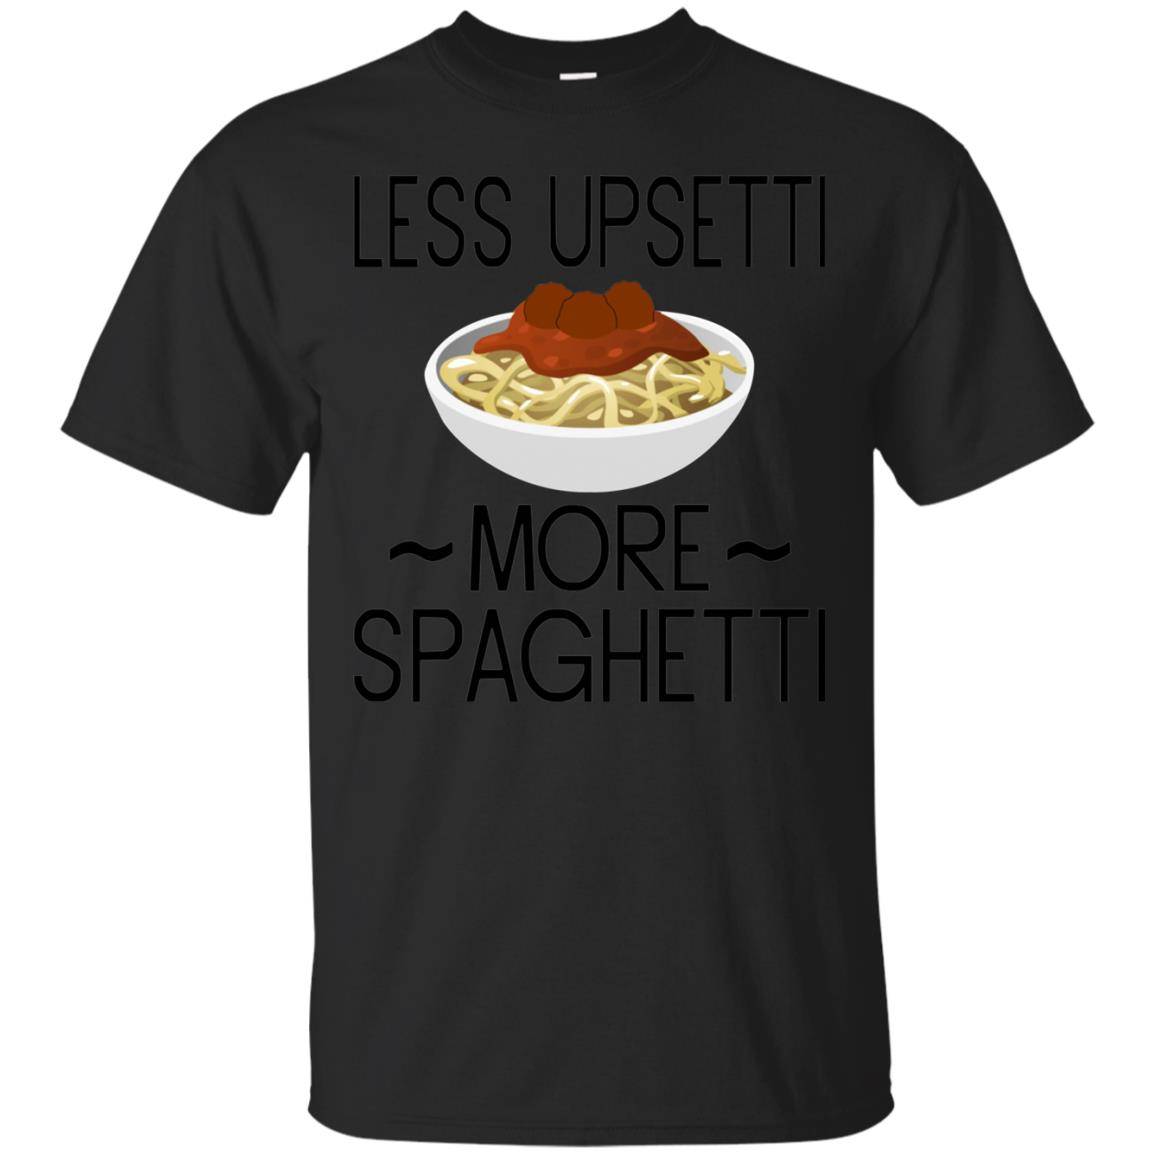 less upsetti more spaghetti shirt - black